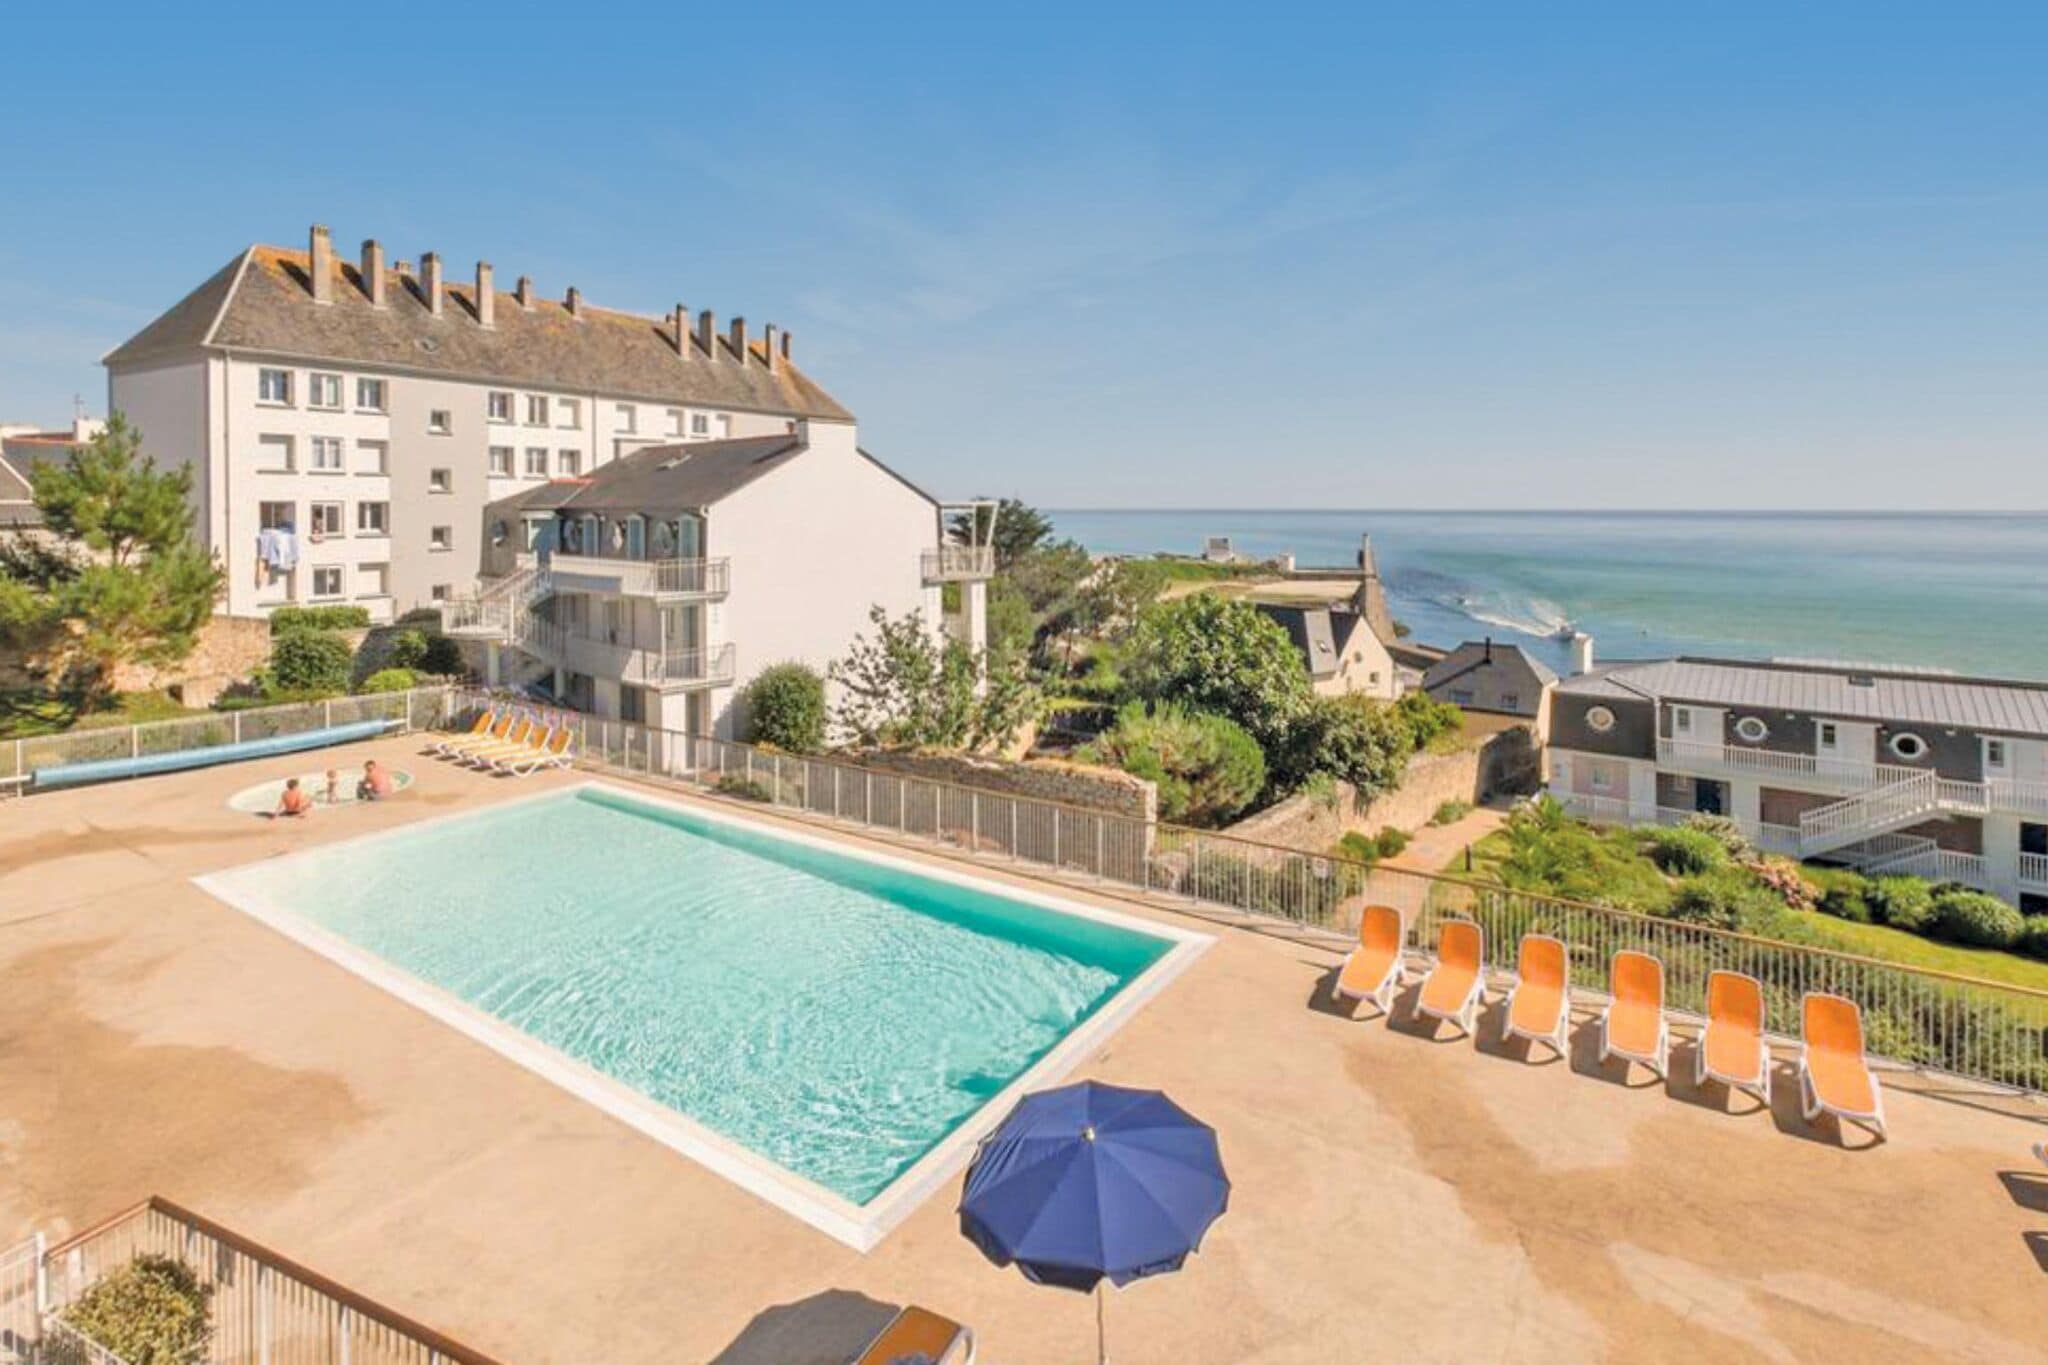 Appartement spacieux avec belle piscine et vue panoramique sur la mer